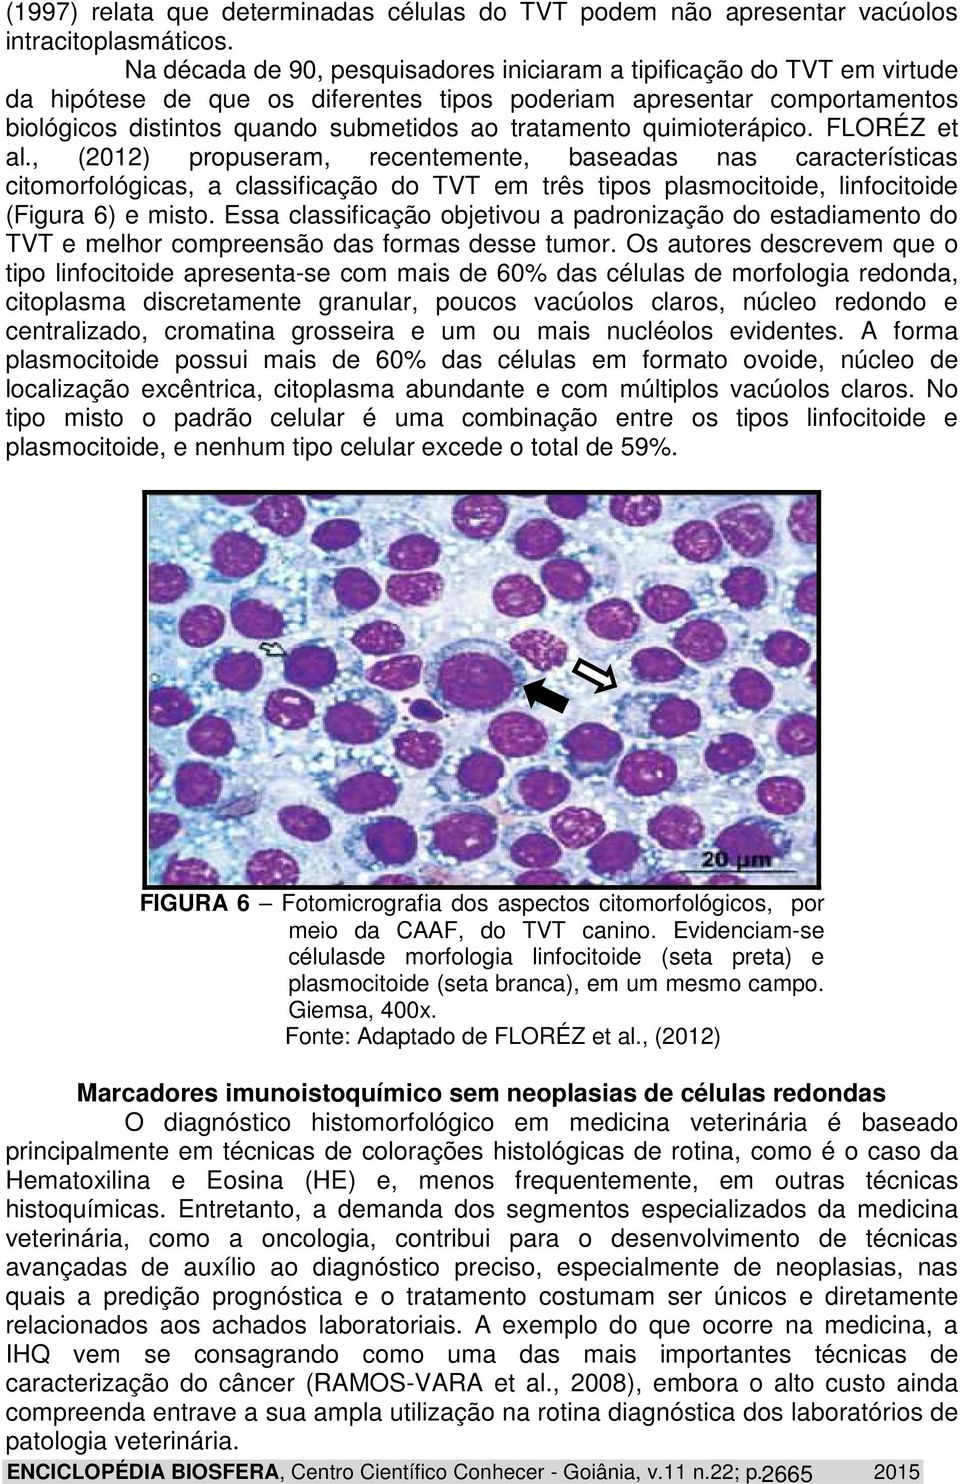 quimioterápico. FLORÉZ et al., (2012) propuseram, recentemente, baseadas nas características citomorfológicas, a classificação do TVT em três tipos plasmocitoide, linfocitoide (Figura 6) e misto.